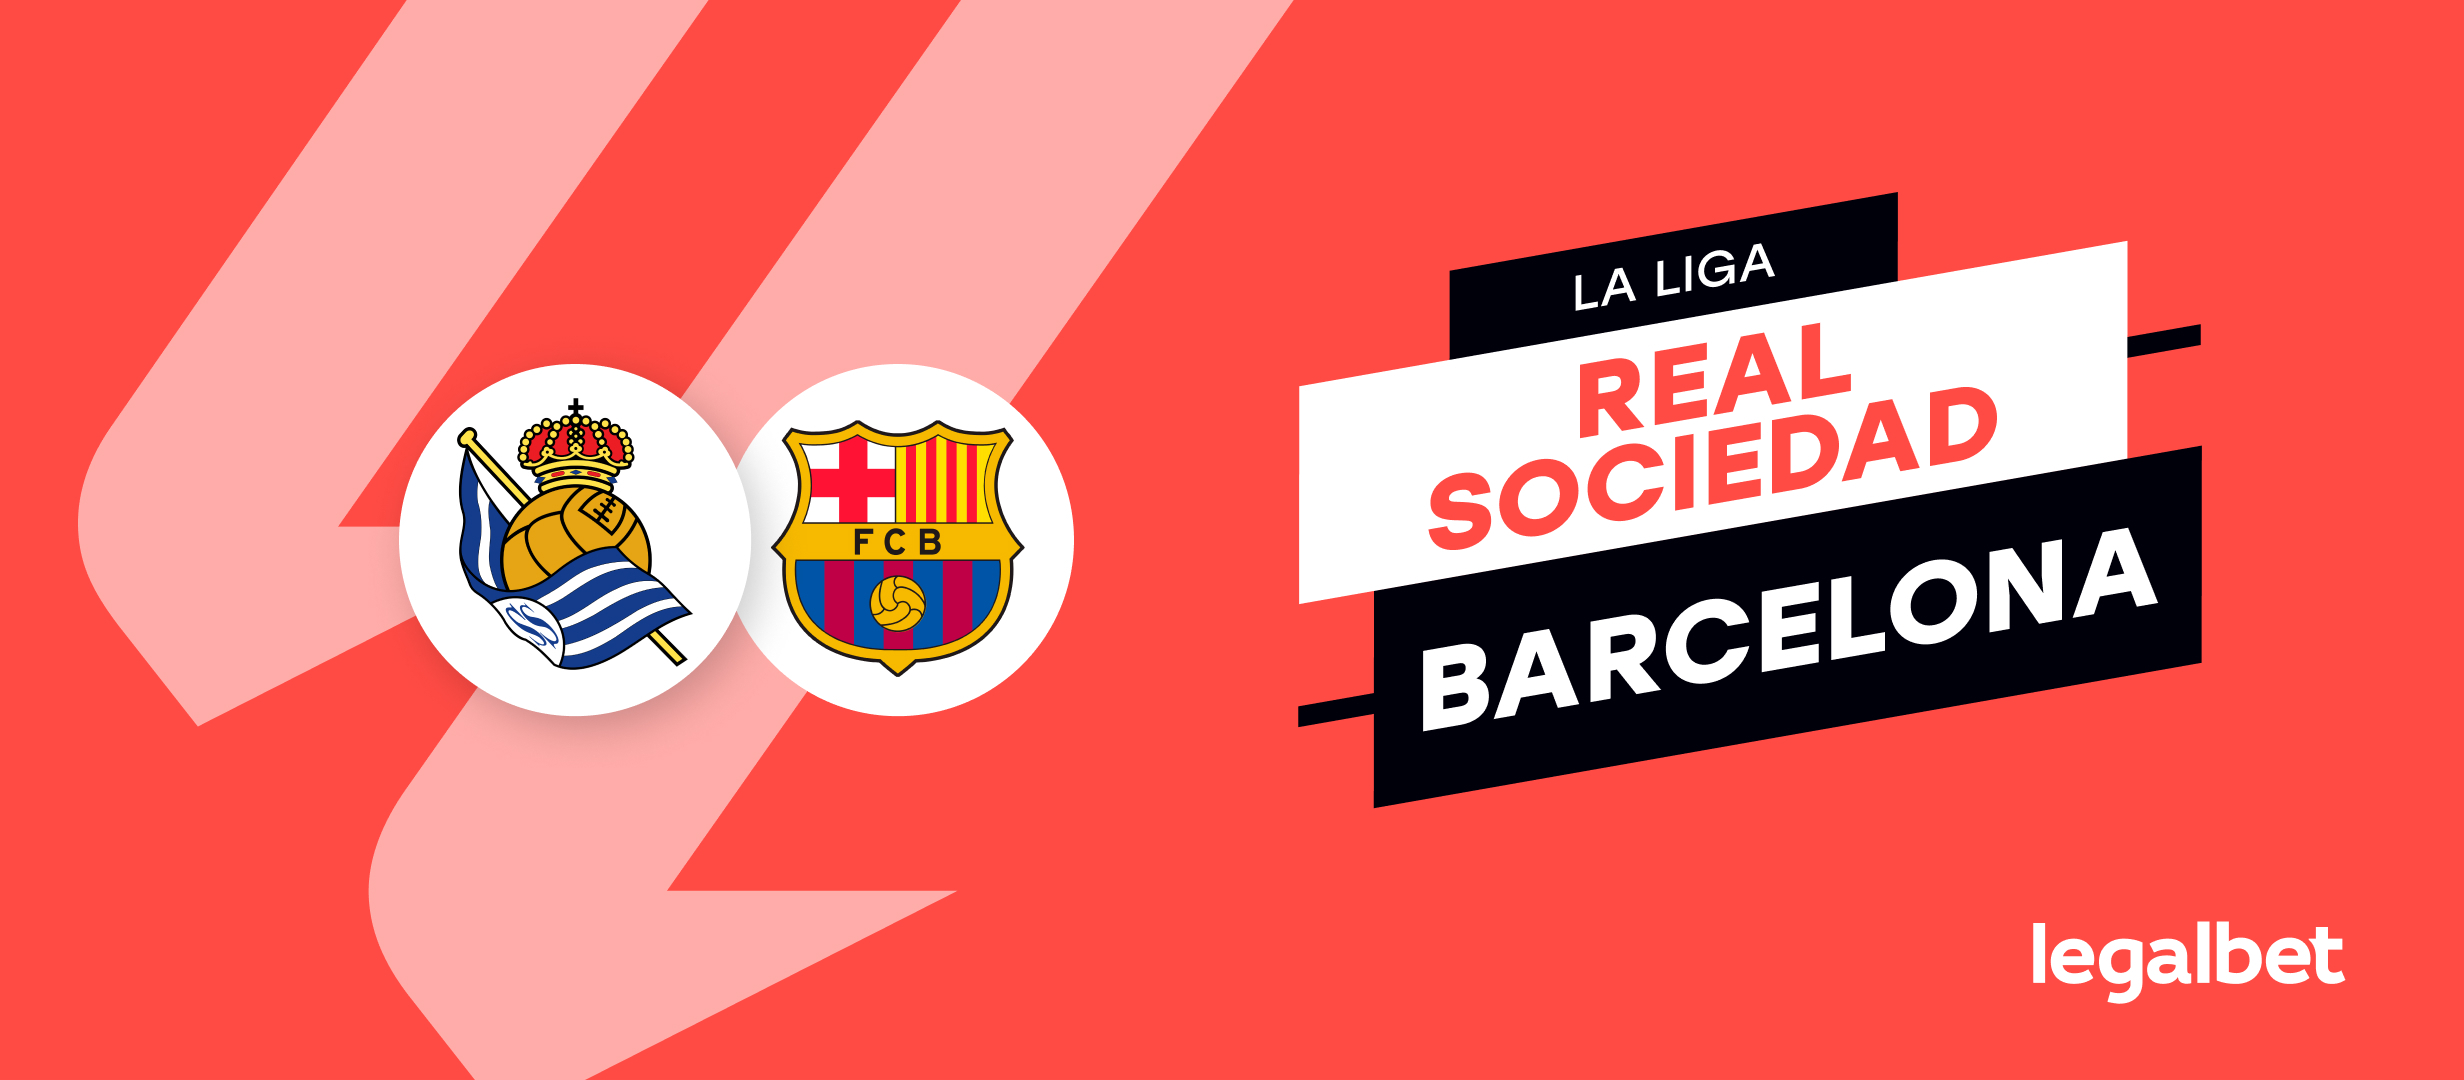 Apuestas barcelona real sociedad